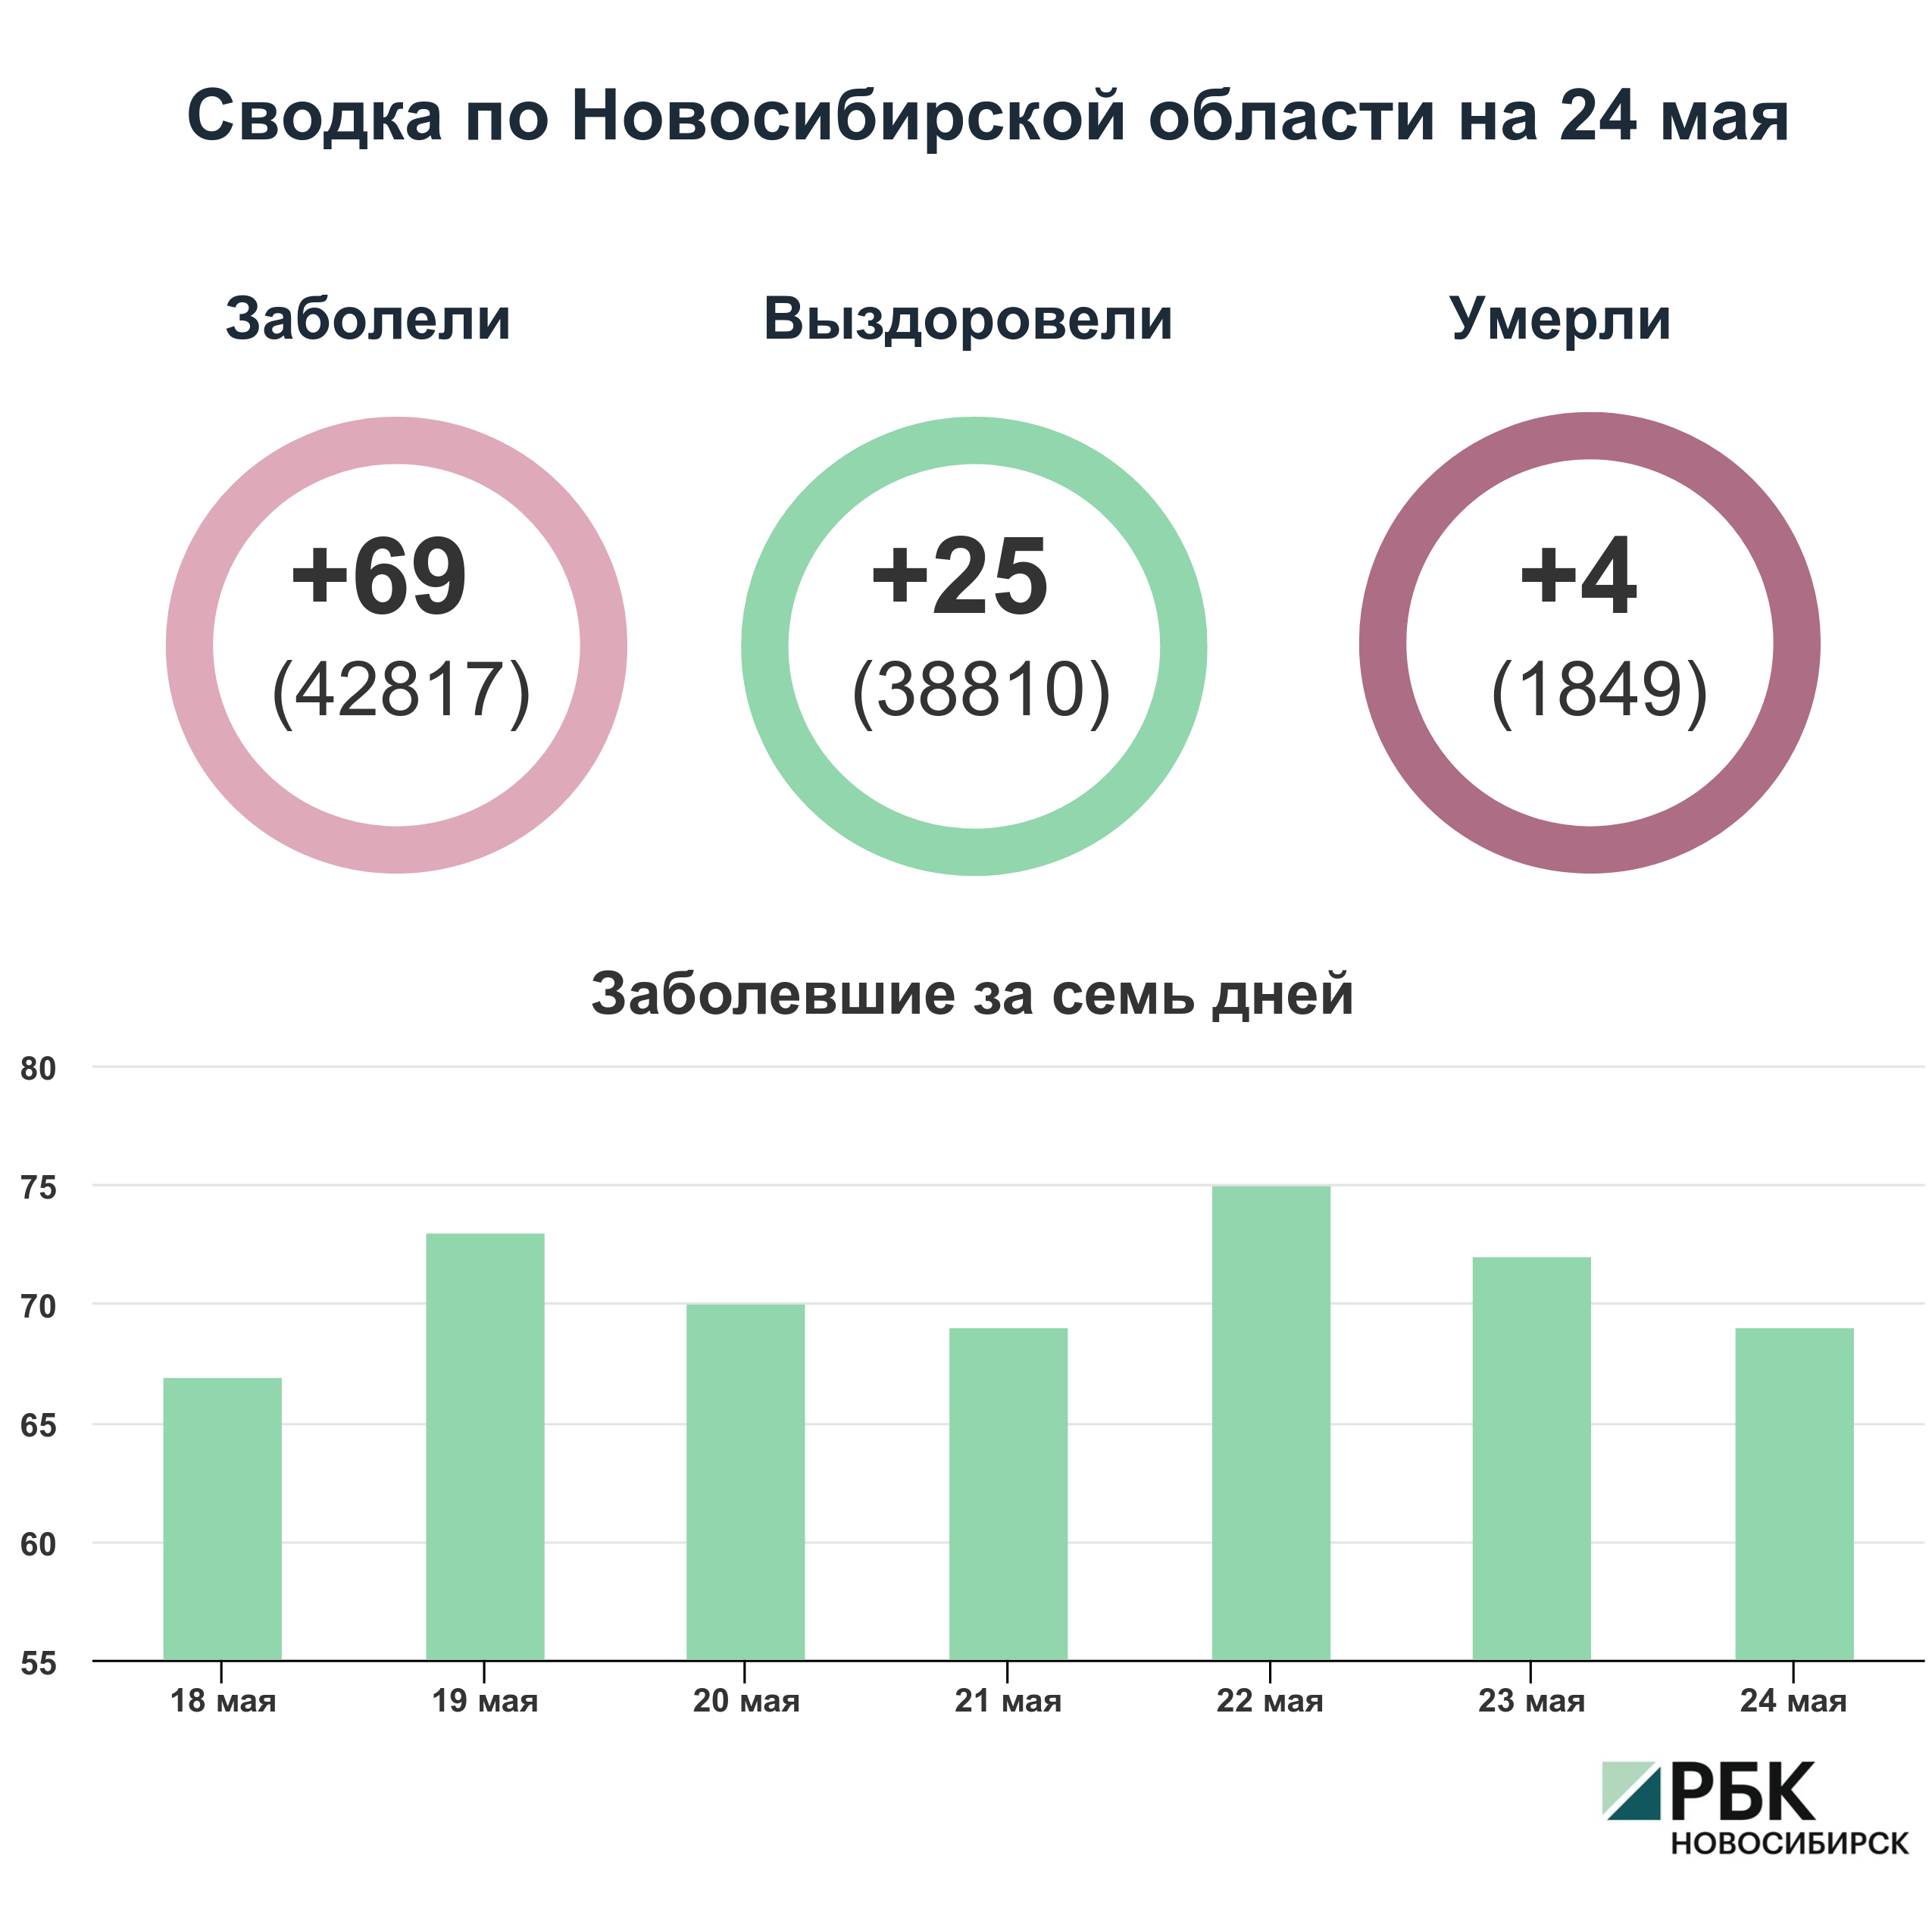 Коронавирус в Новосибирске: сводка на 24 мая